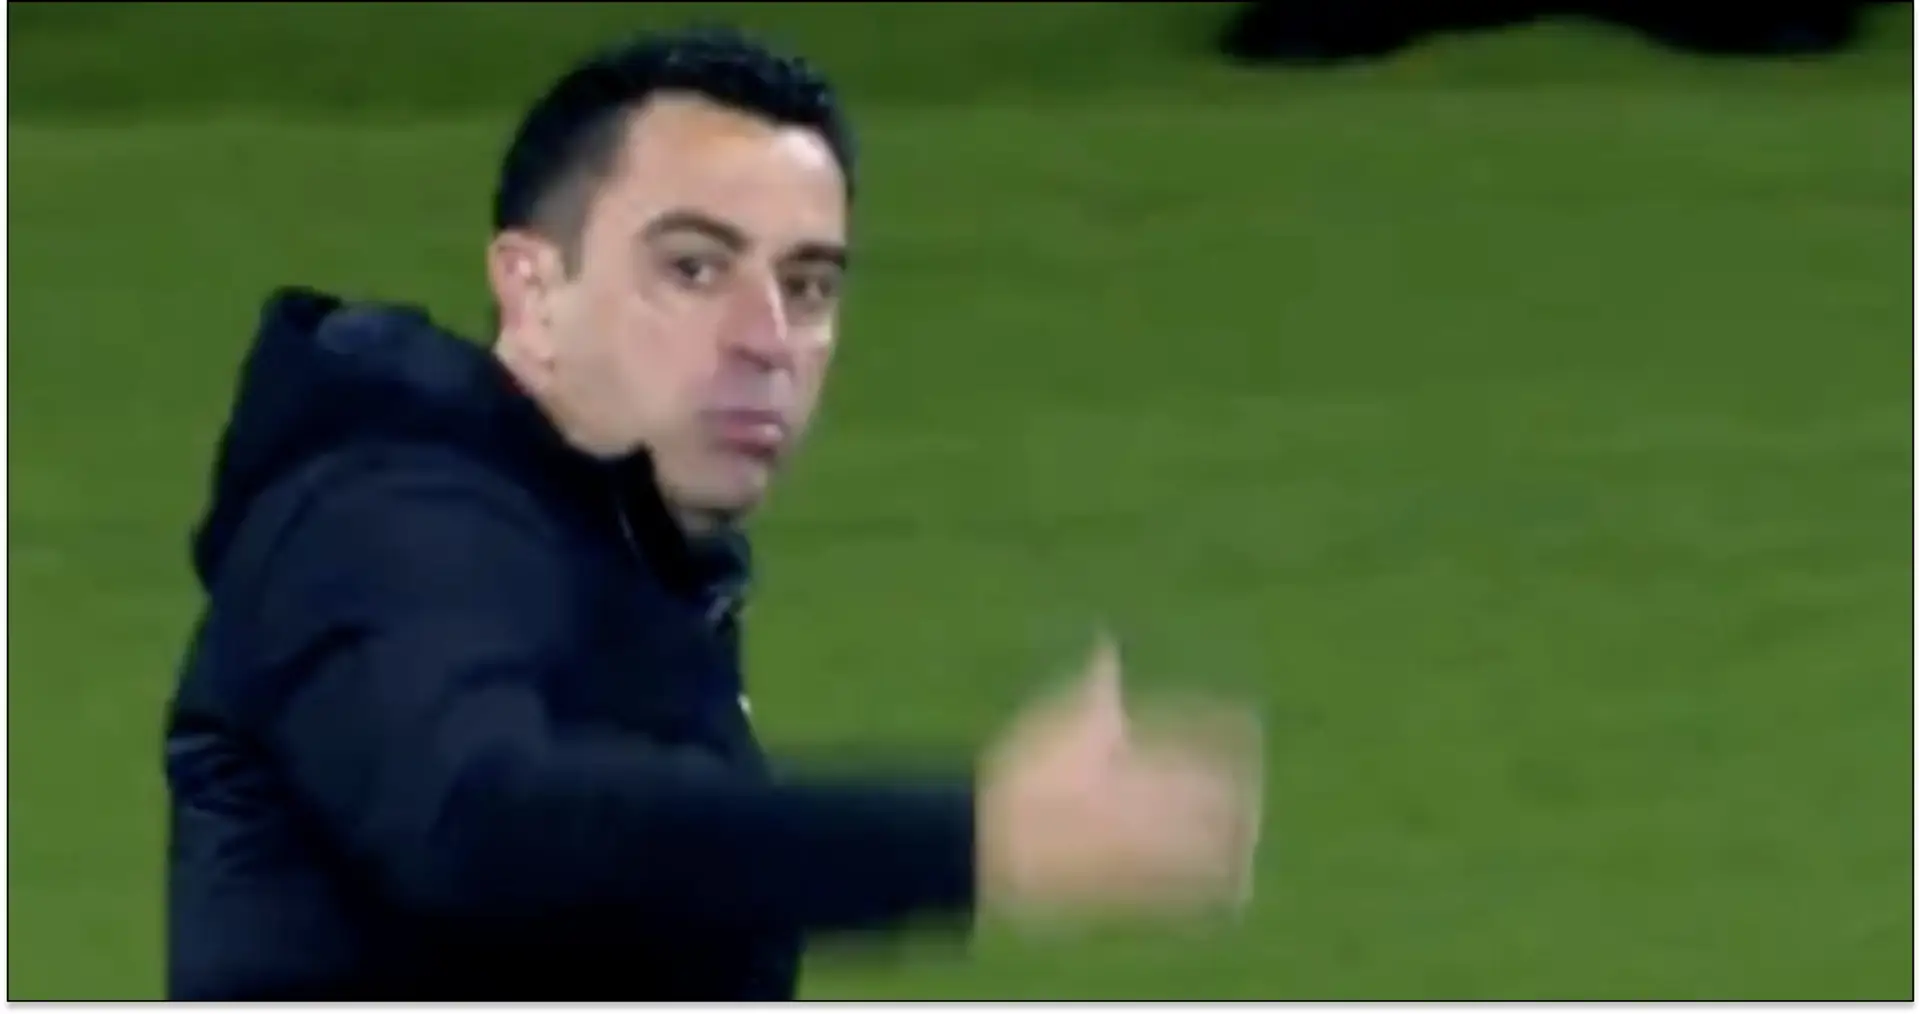 "Allez-y, renvoyez-moi": ce que Xavi a dit à l'arbitre lors du match contre le PSG avant de voir rouge